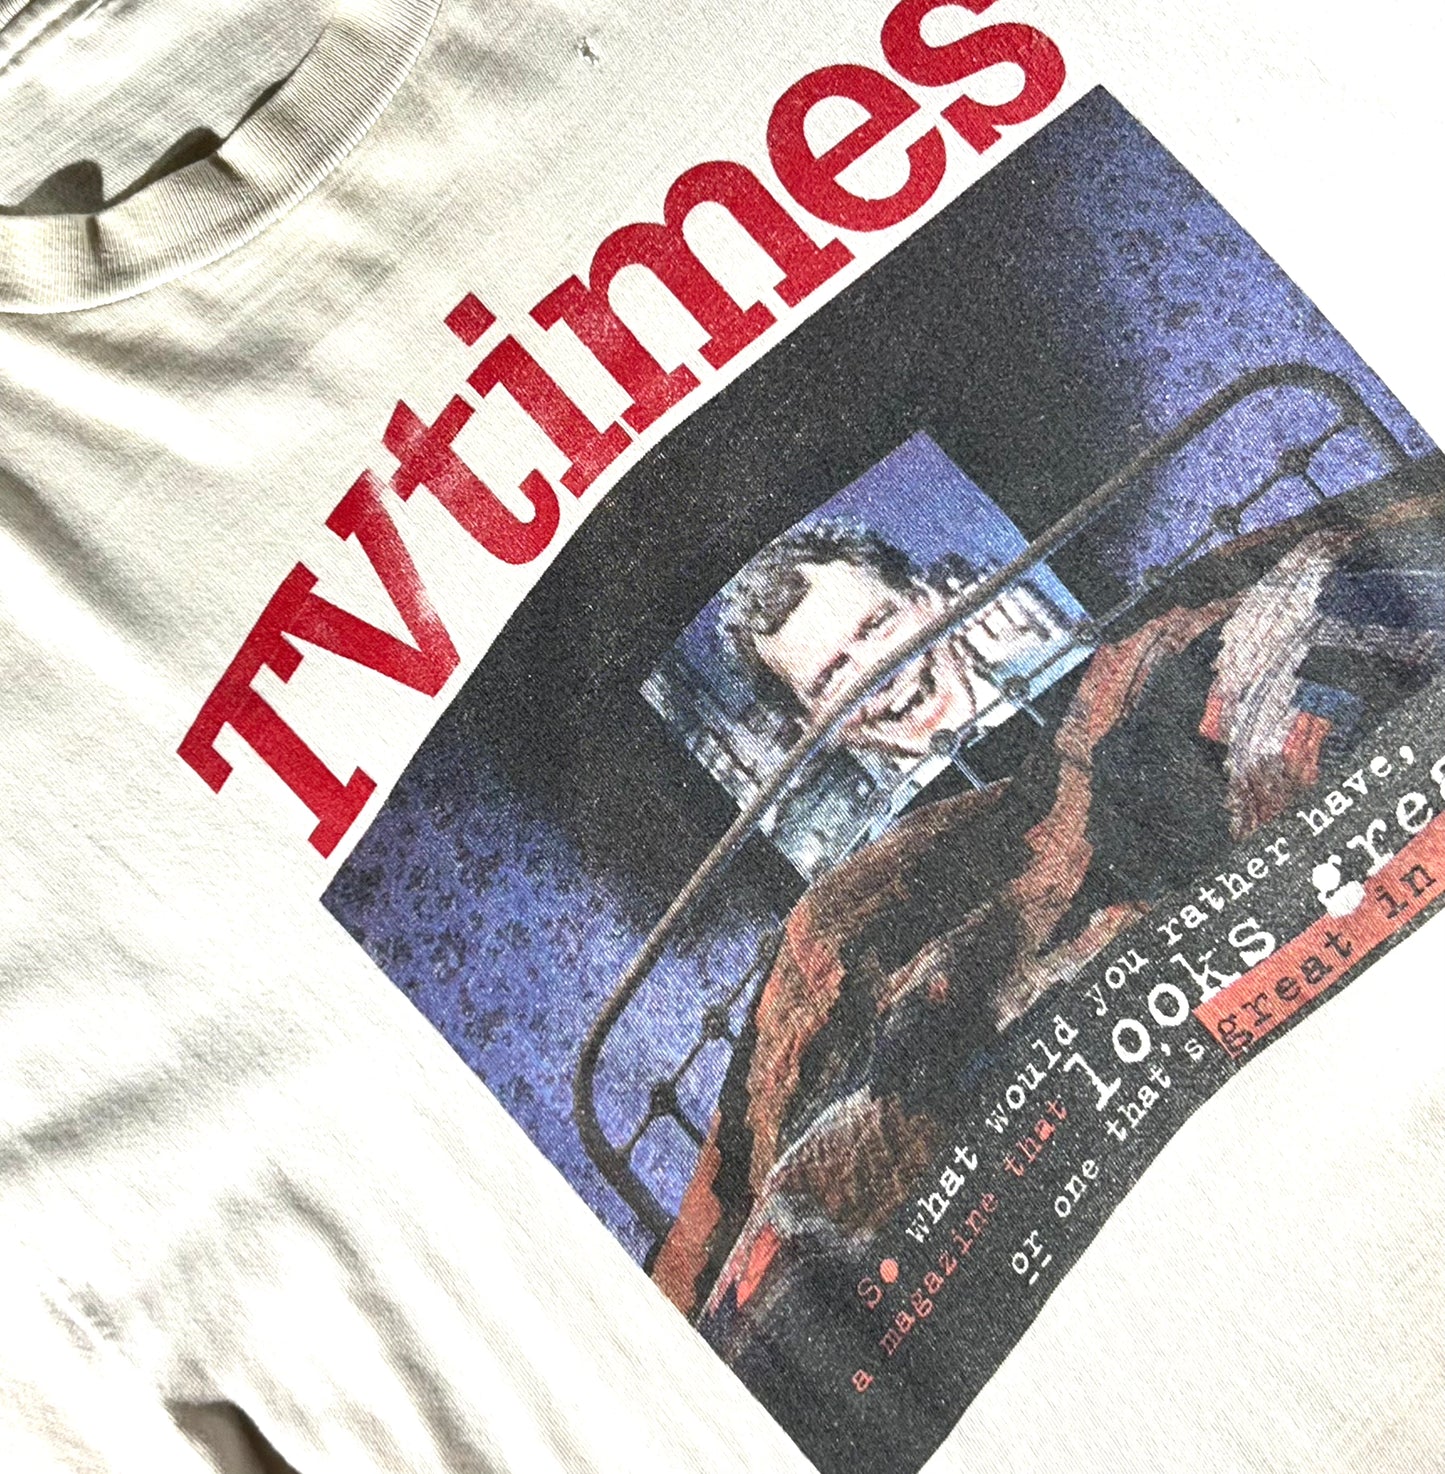 Vintage TV Times T-Shirt Letterman 90's Single Stitch Epic